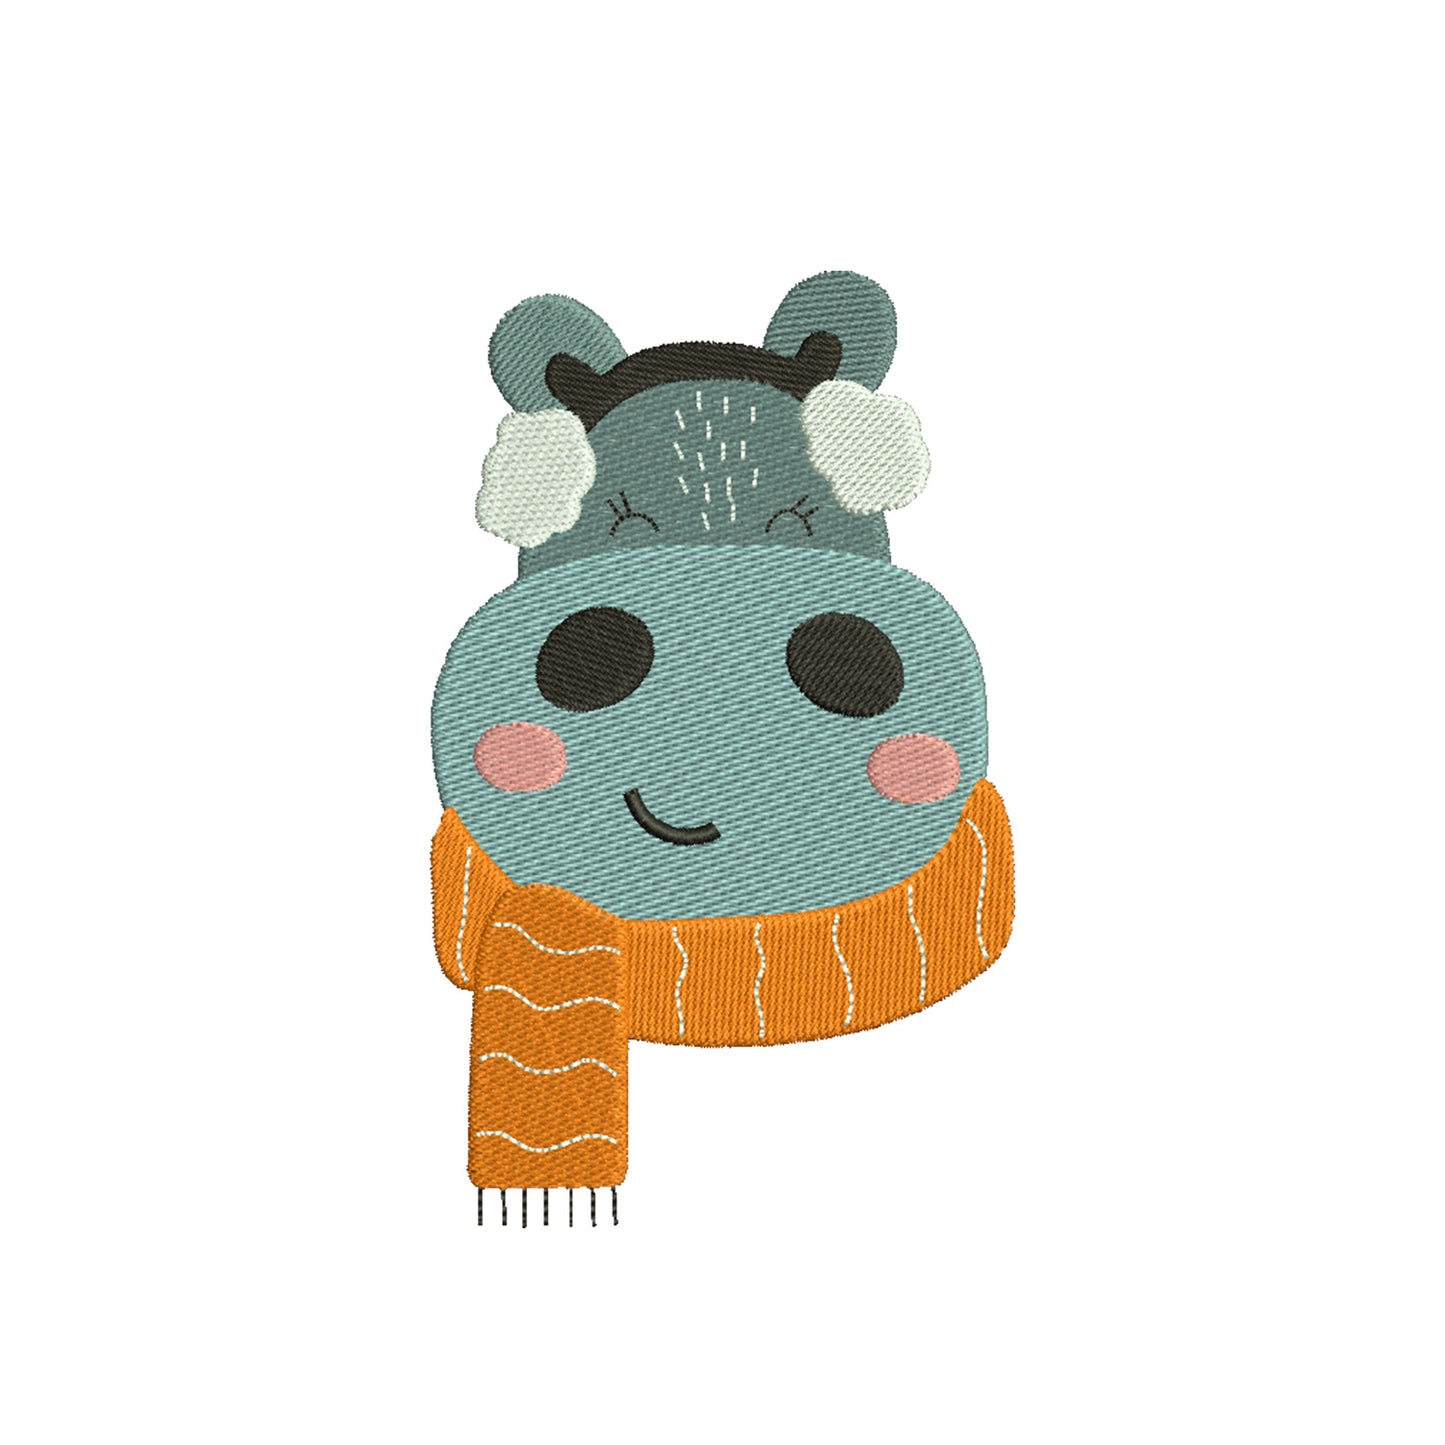 Hippo machine embroidery designs - 170032